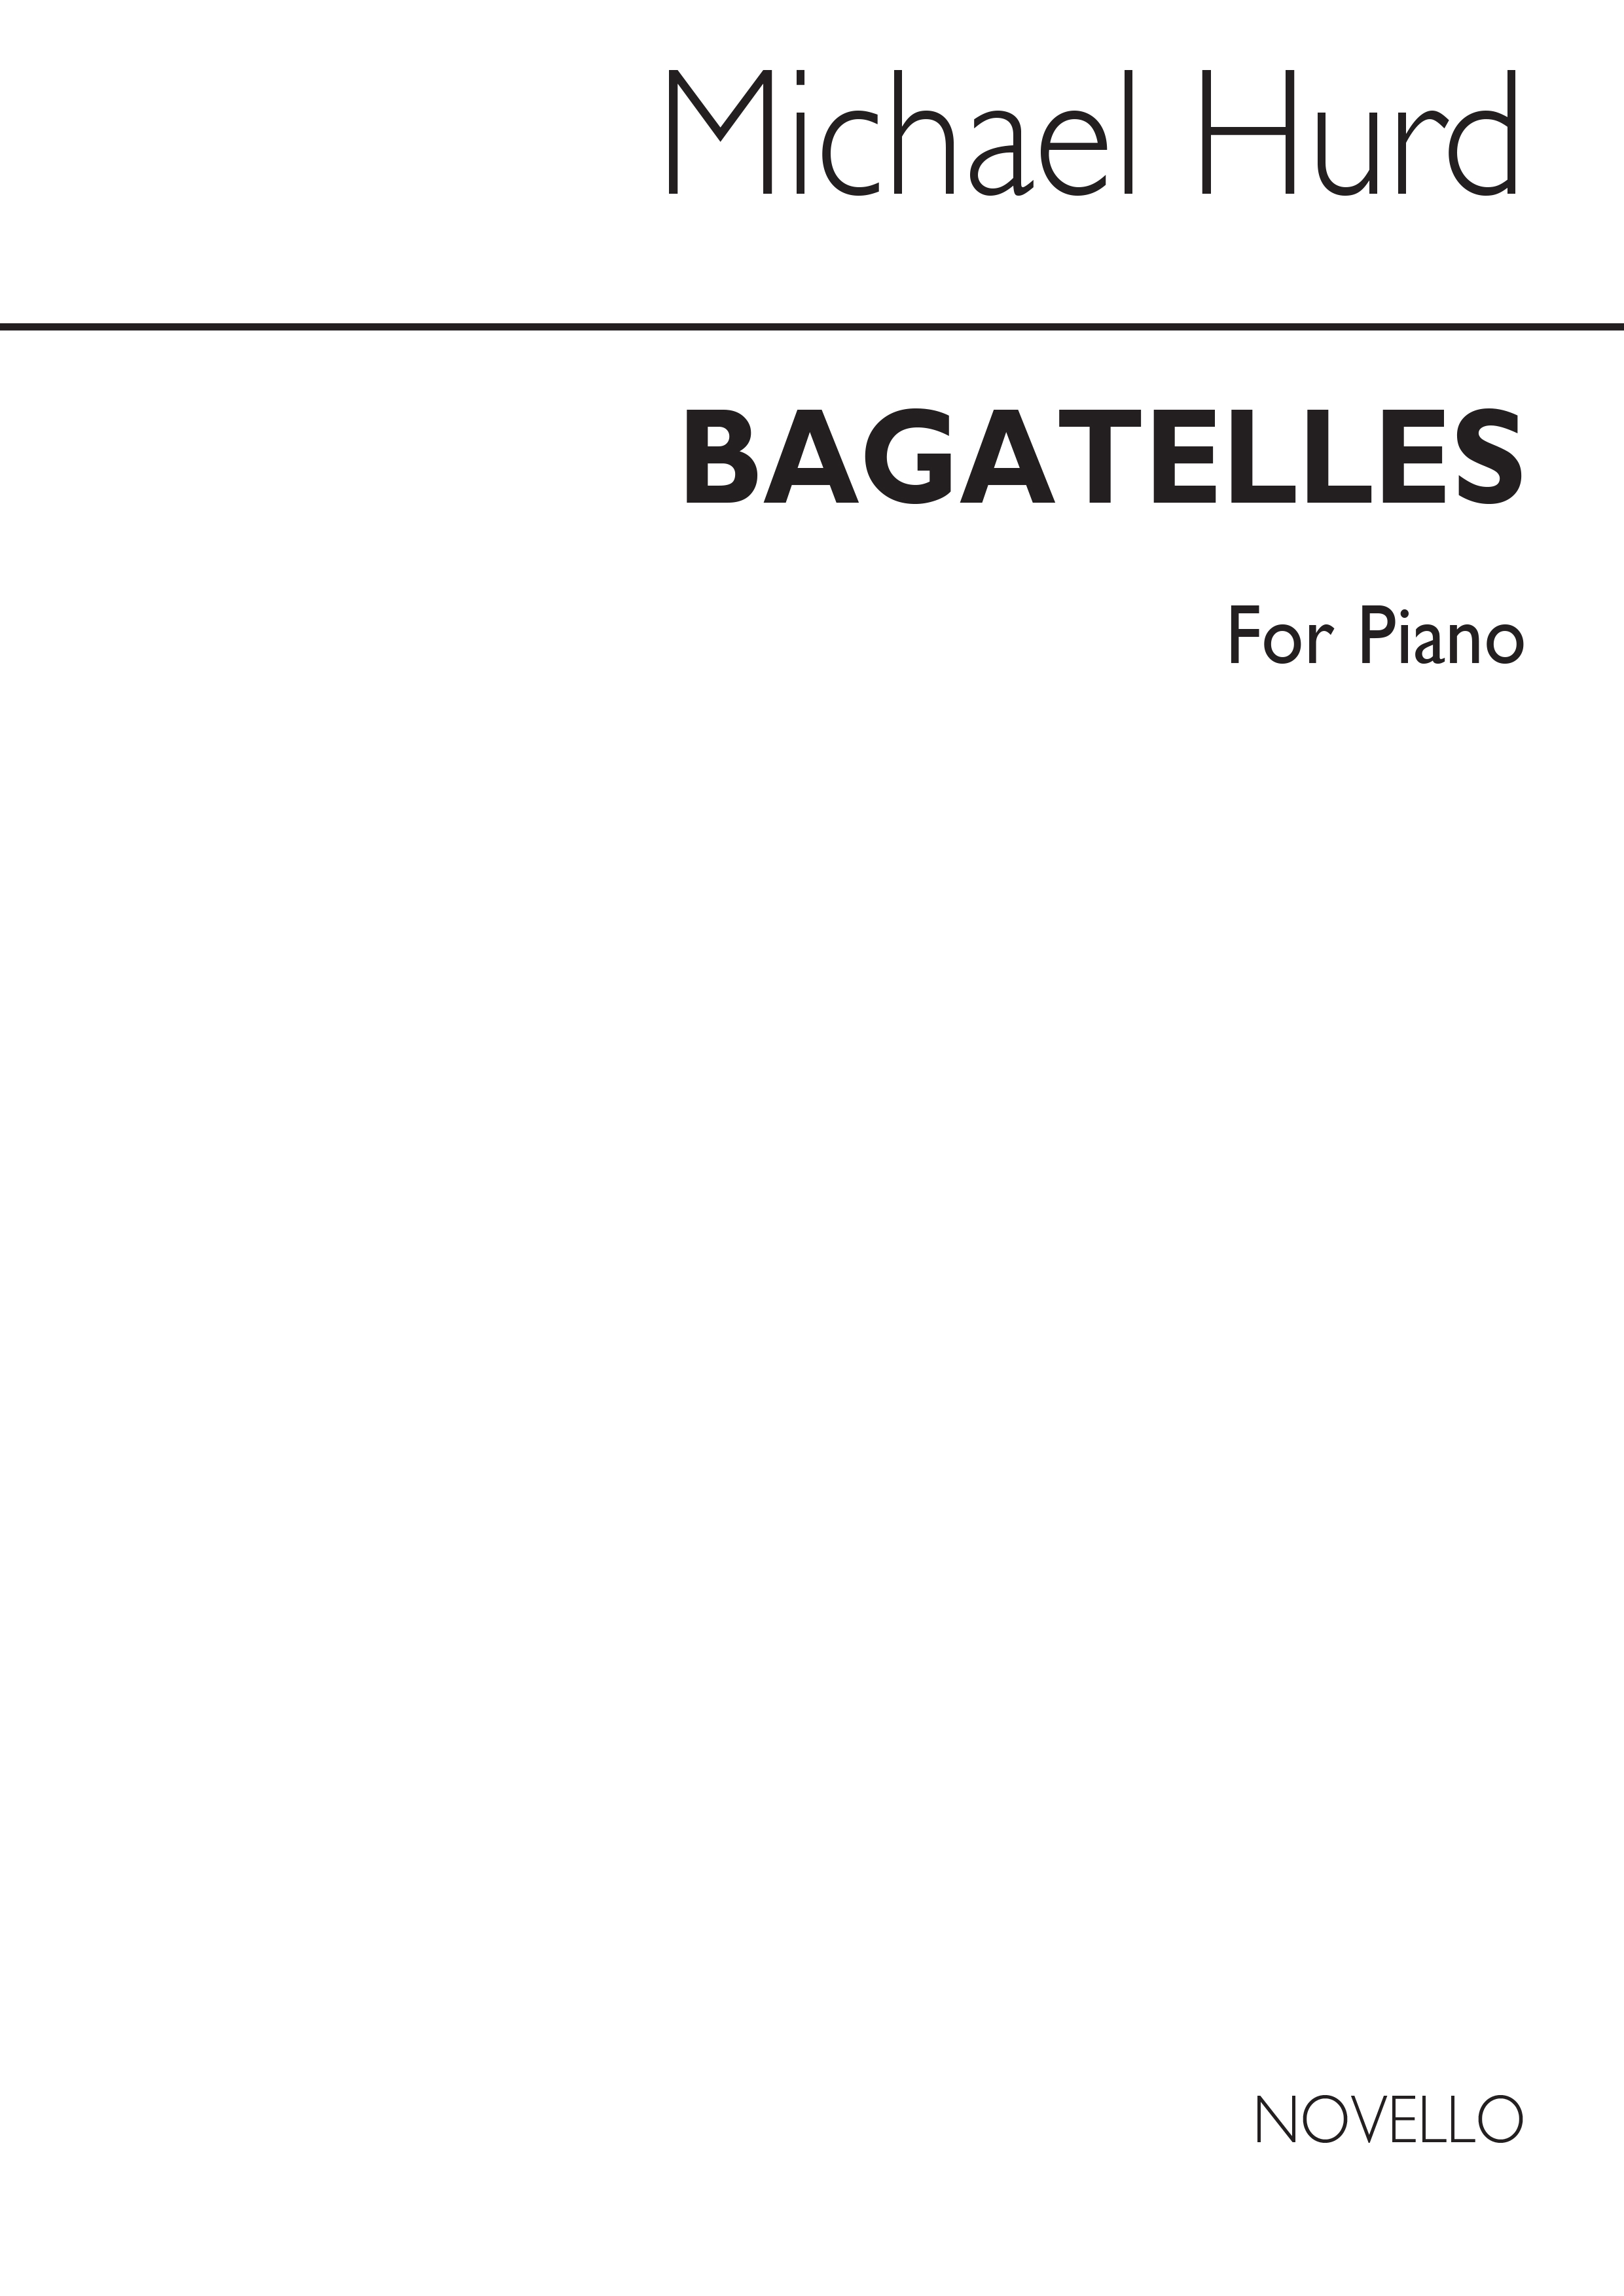 Hurd: Bagatelles for Piano